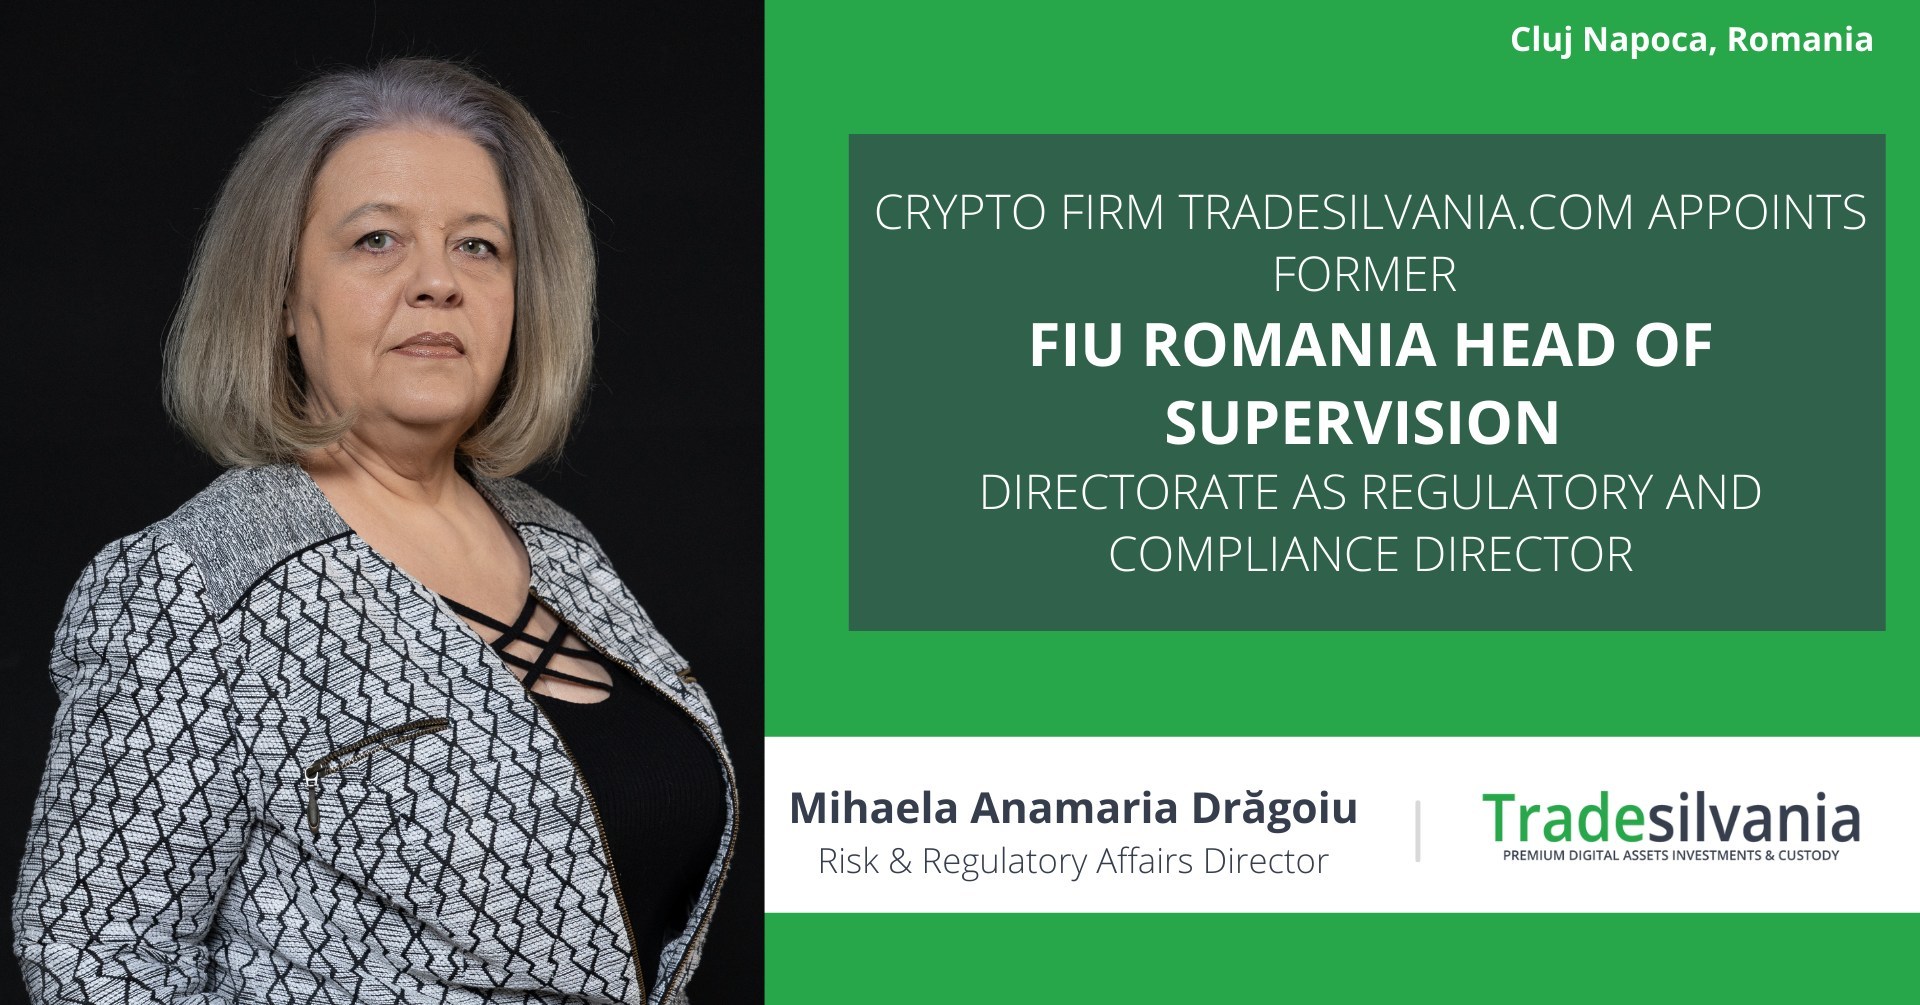 Platforma românească de criptomonede Tradesilvania.com o numește pe Mihaela Drăgoiu, fost șef al Direcției Supraveghere și Control a FIU România (ONPCSB) în funcția de director pentru Risc și Afaceri de Reglementare